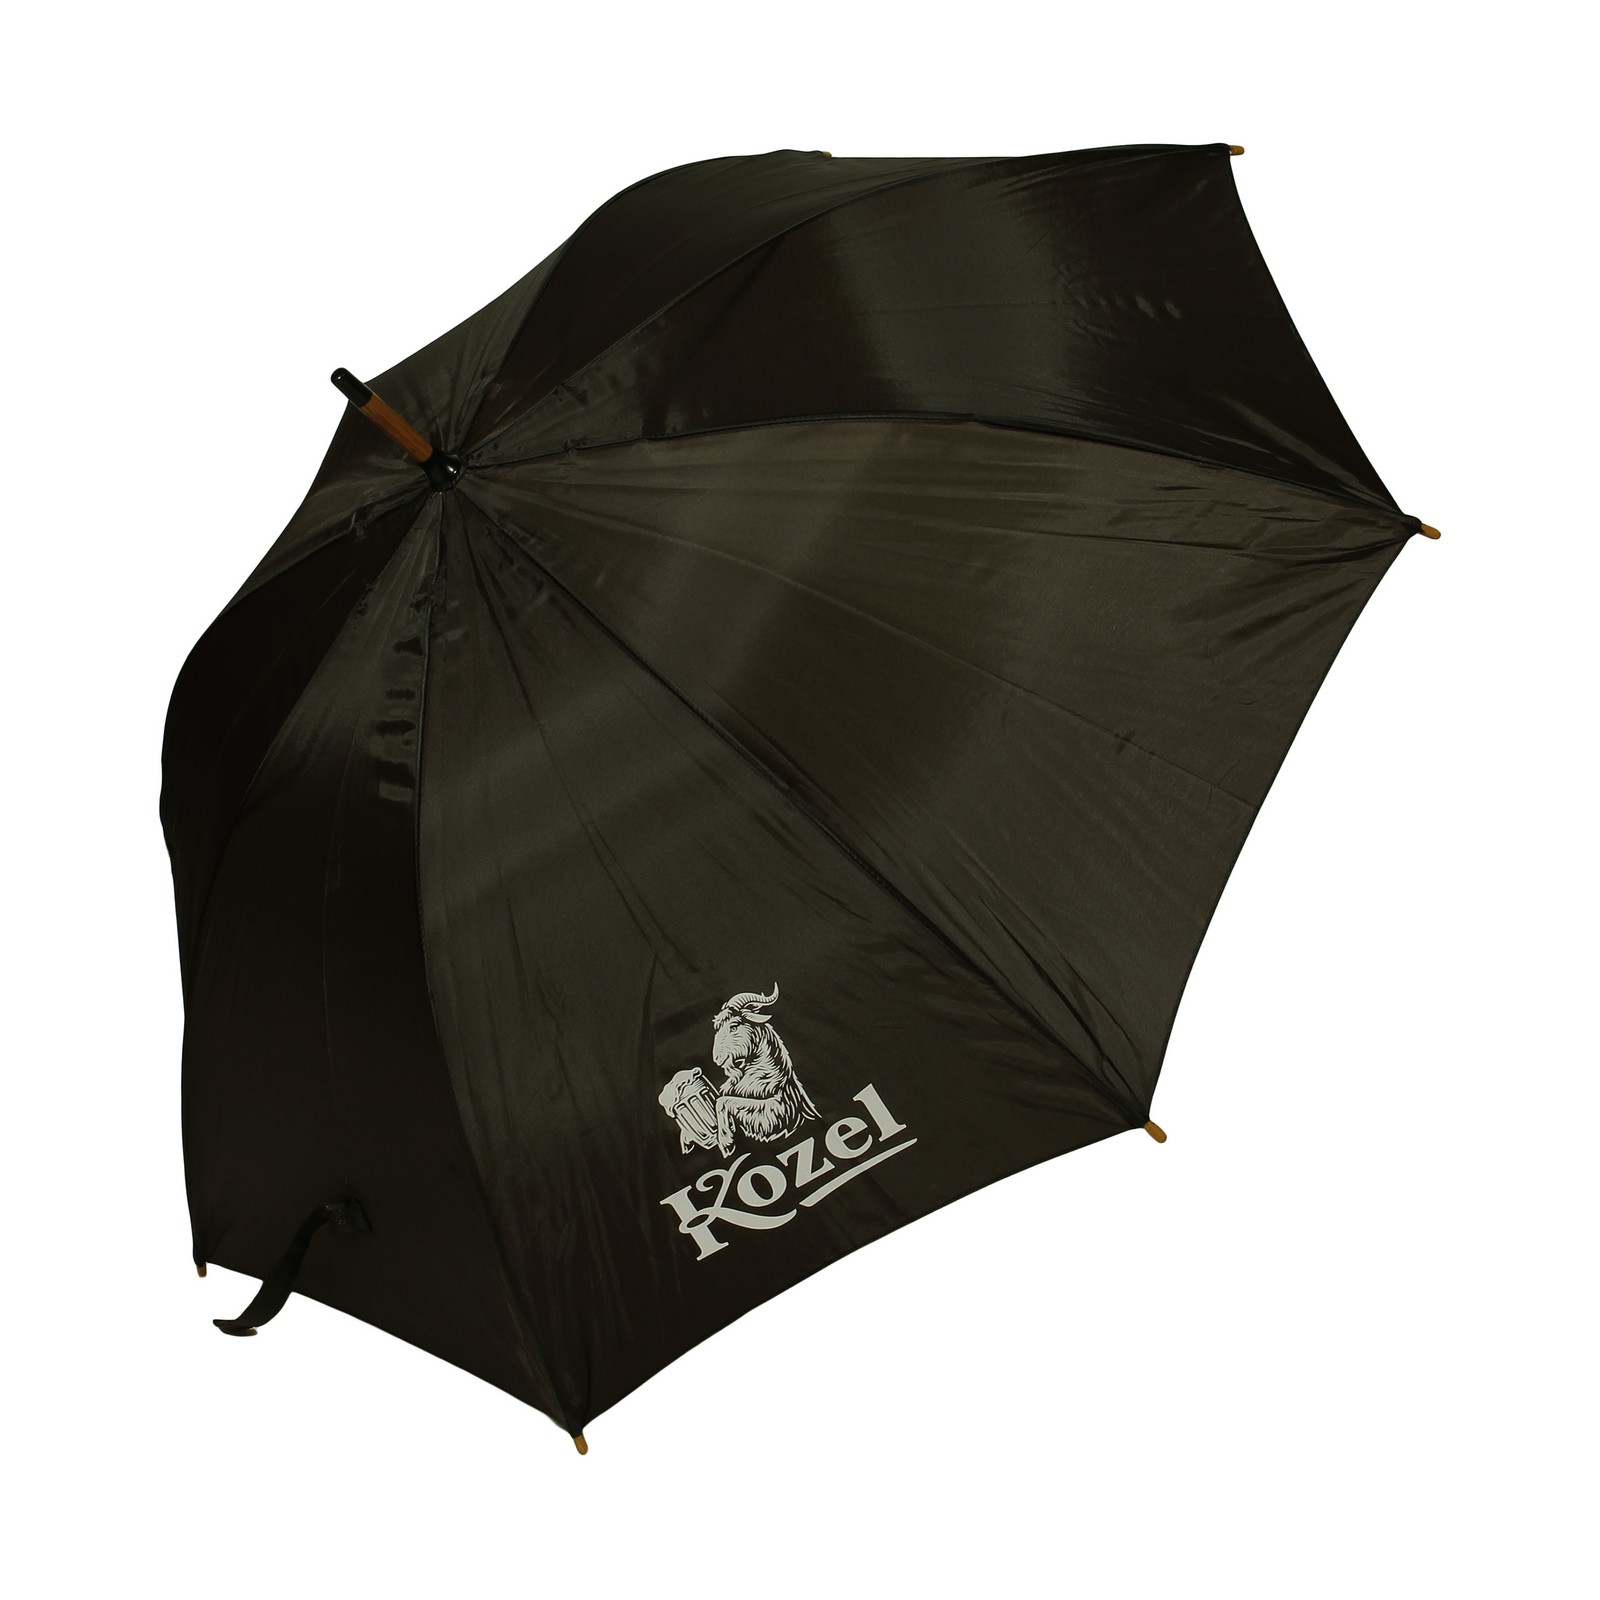 Brauner Regenschirm Kozel